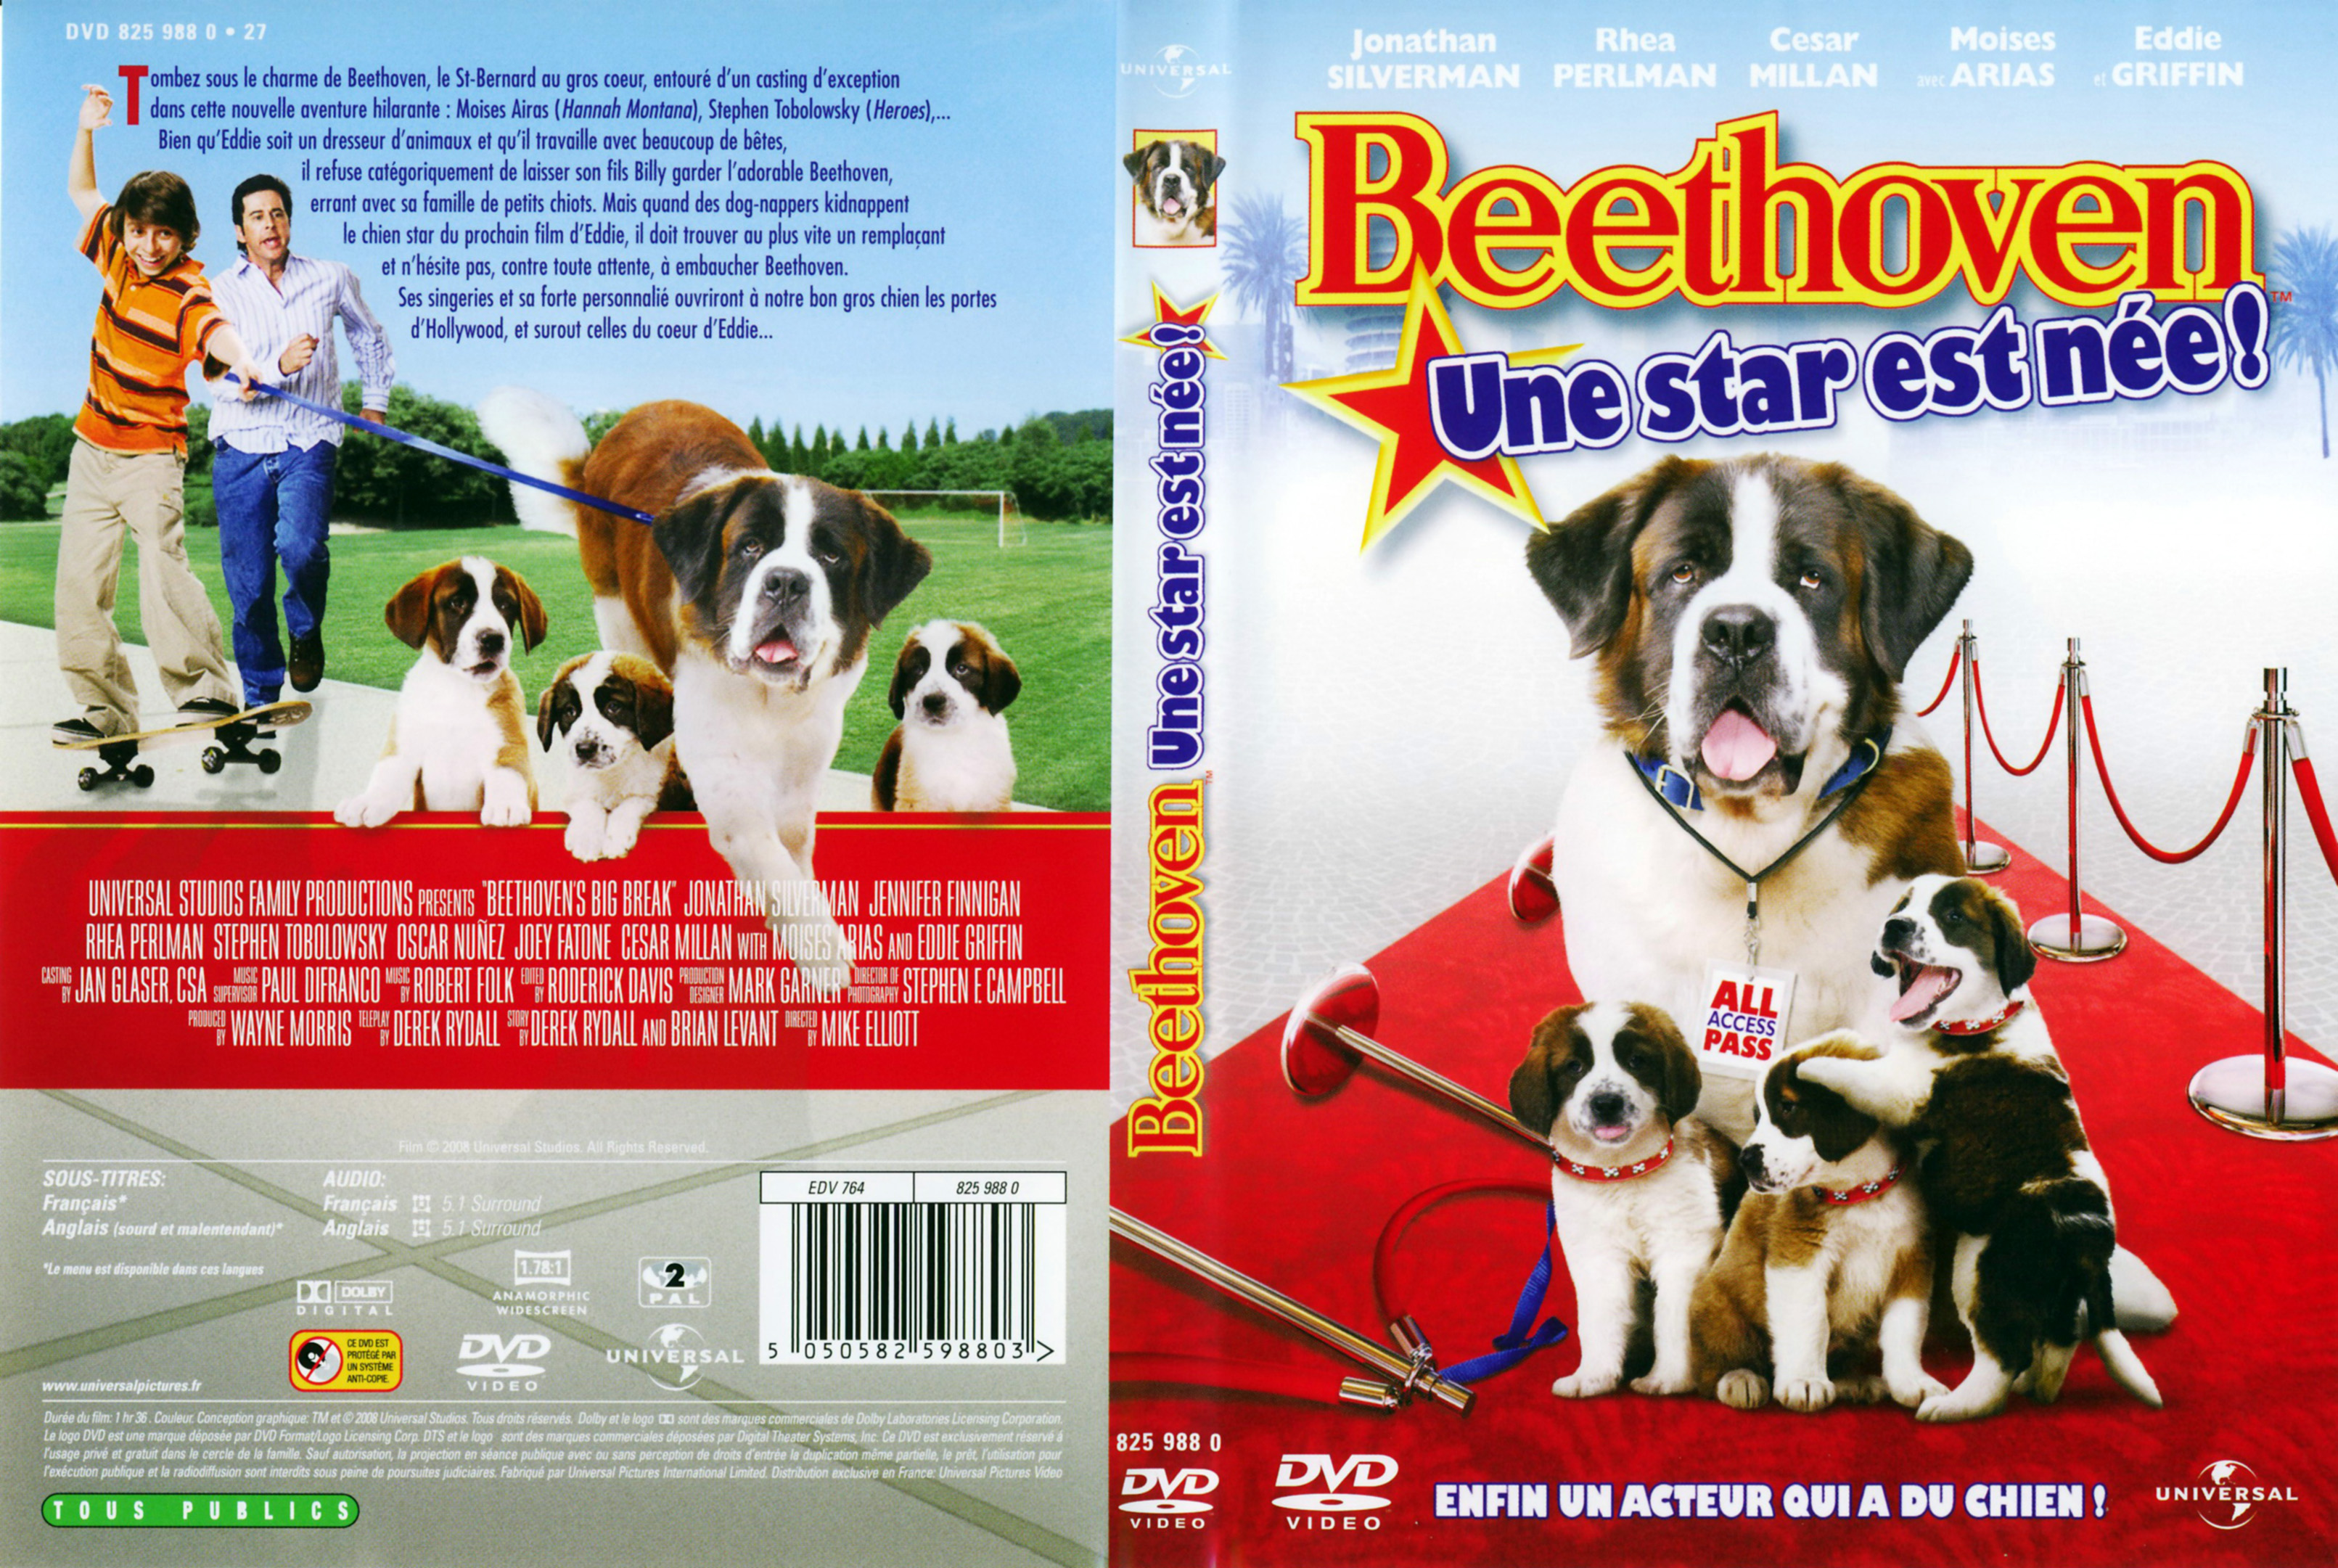 Jaquette DVD Beethoven 6 - une star est ne